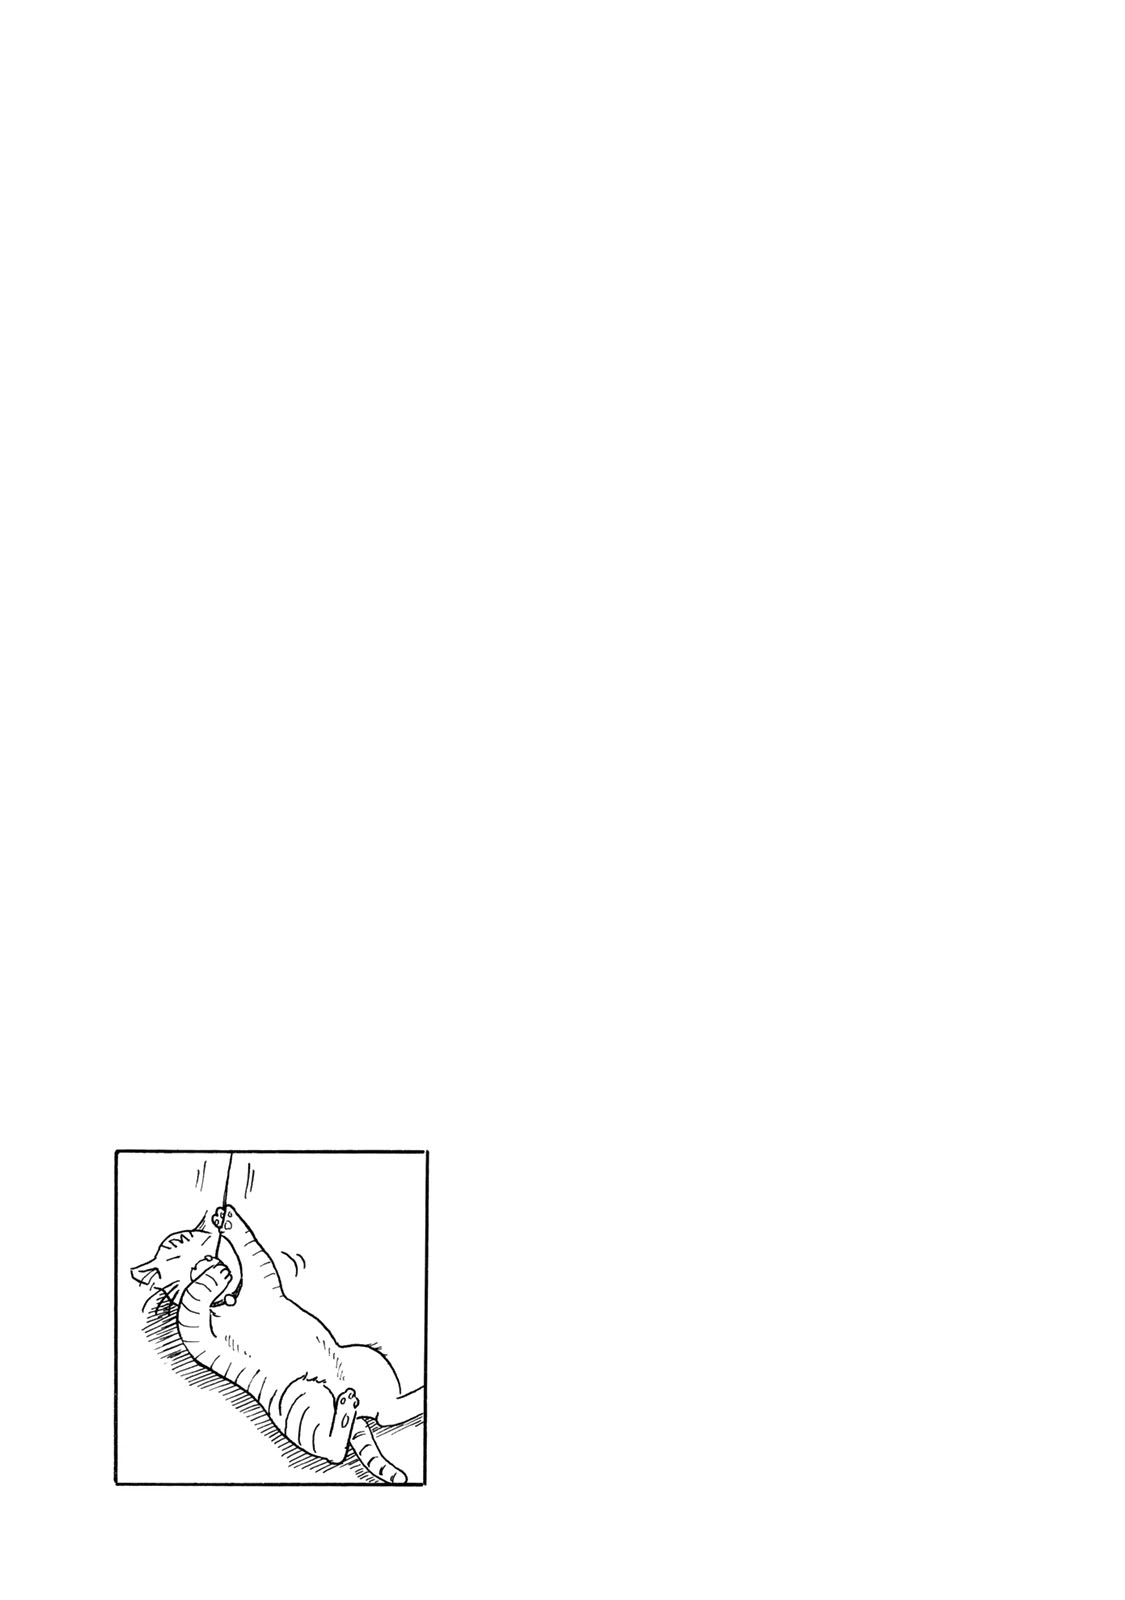 Mizu wa Umi ni Mukatte Nagareru Vol. 1 Ch. 4 Drip Drip, Splish Splash, No Plan Plan